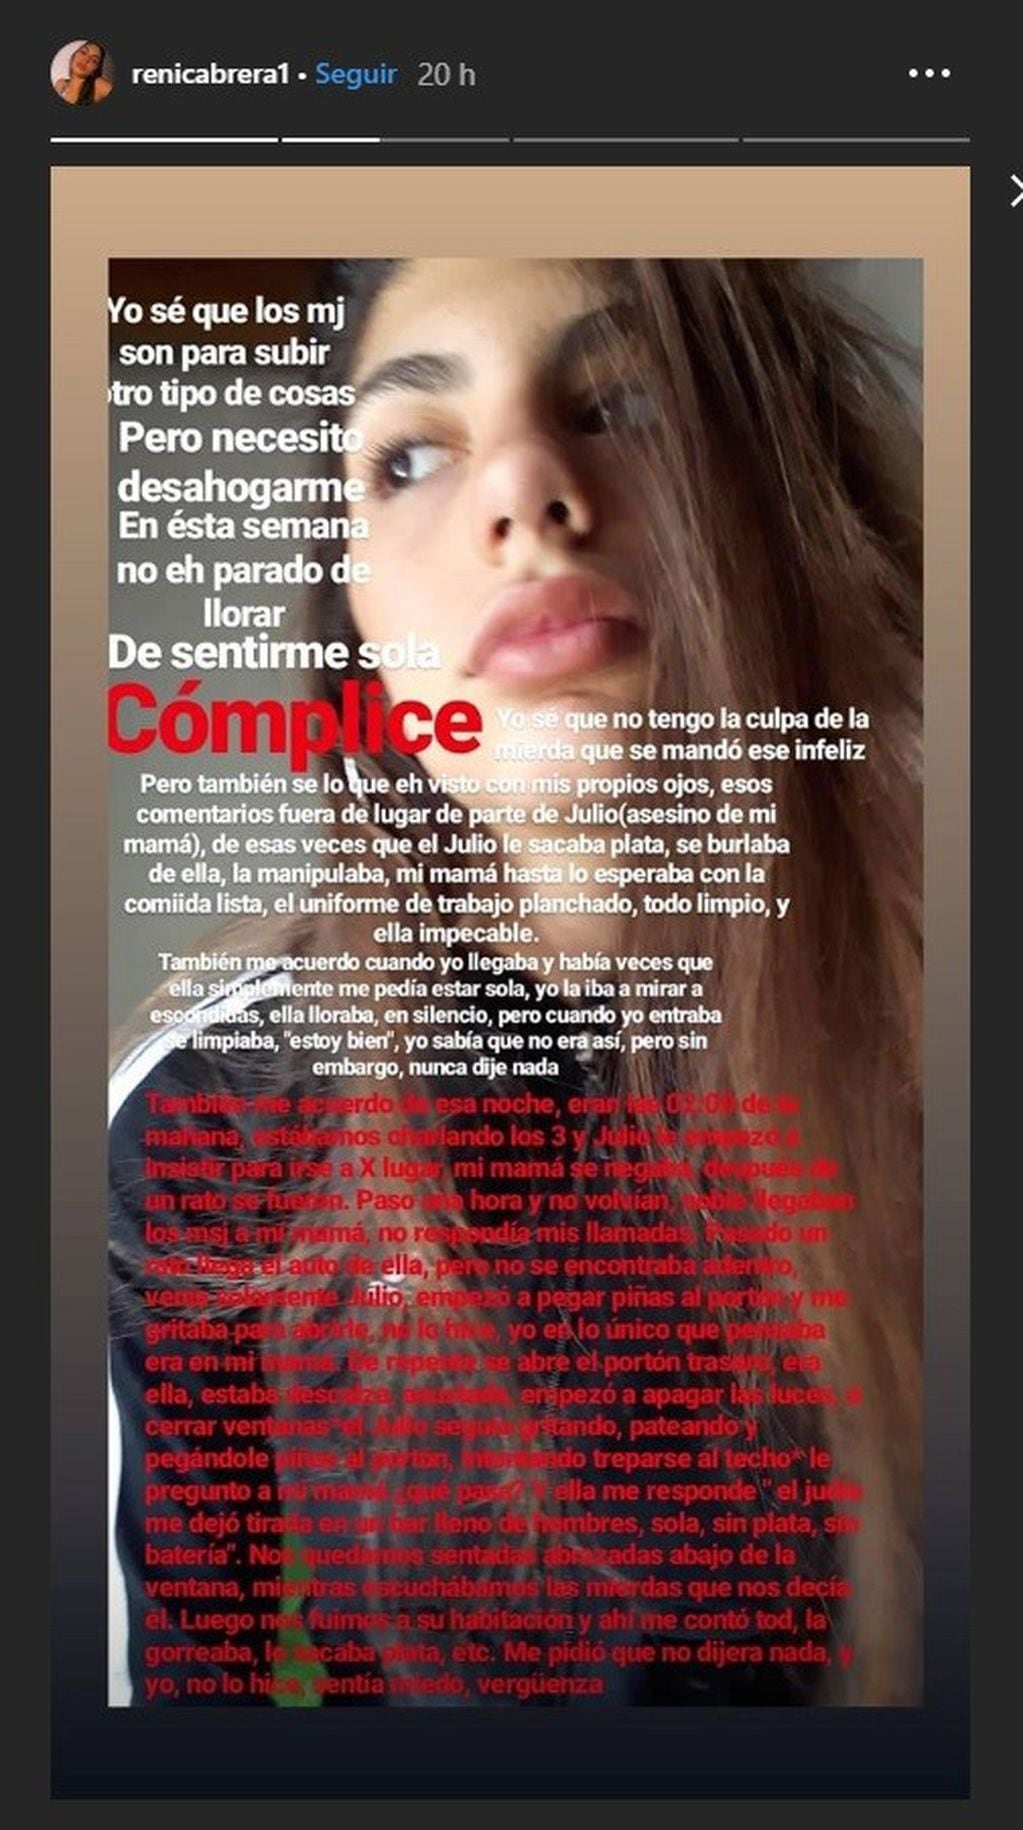 La historia de Instagram de Renata Cabrera.